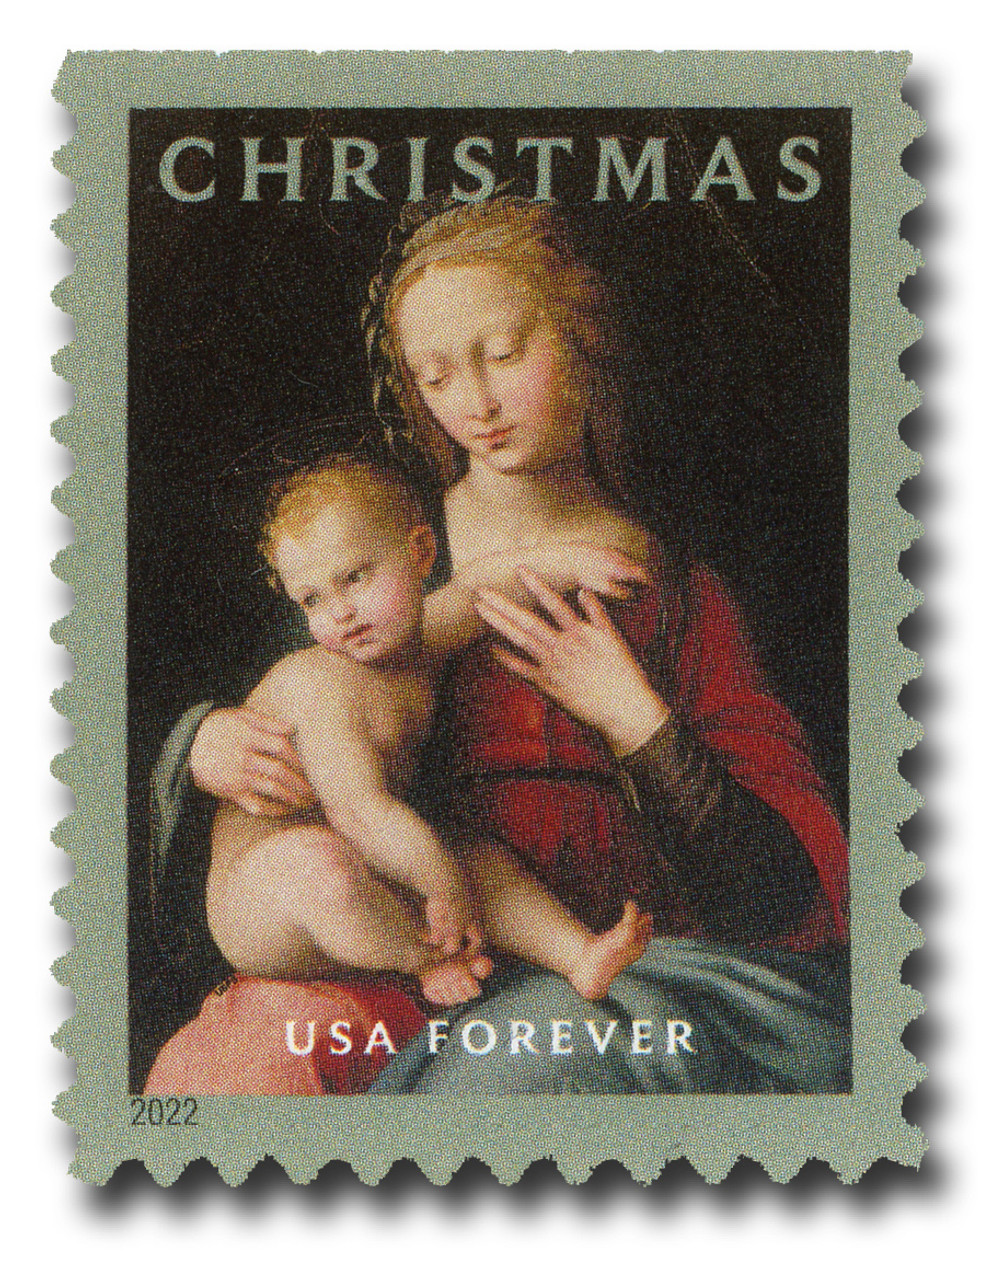 Toddler Size Stamp 18-24m